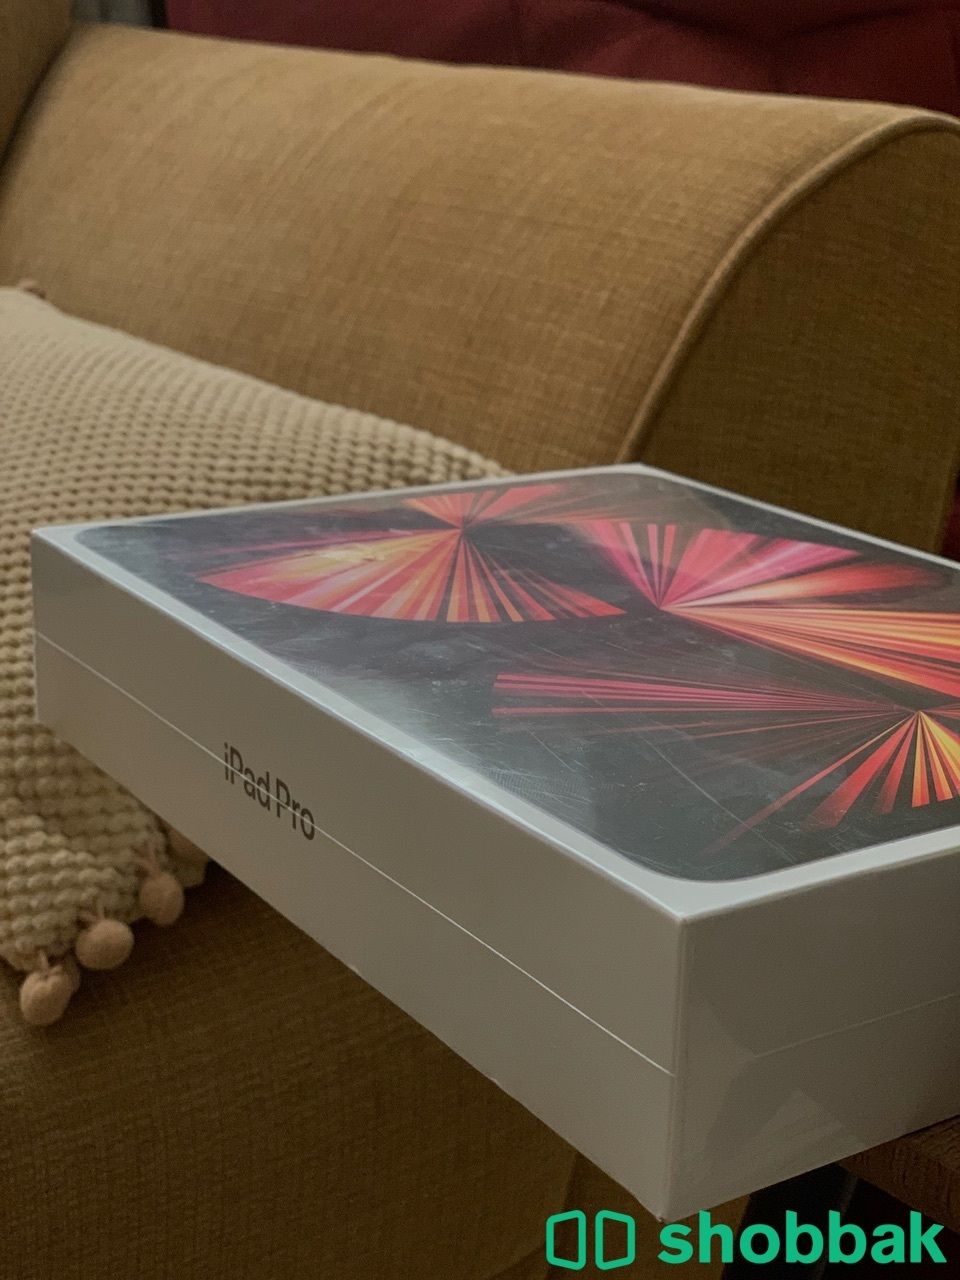  2021 iPad Pro  Shobbak Saudi Arabia